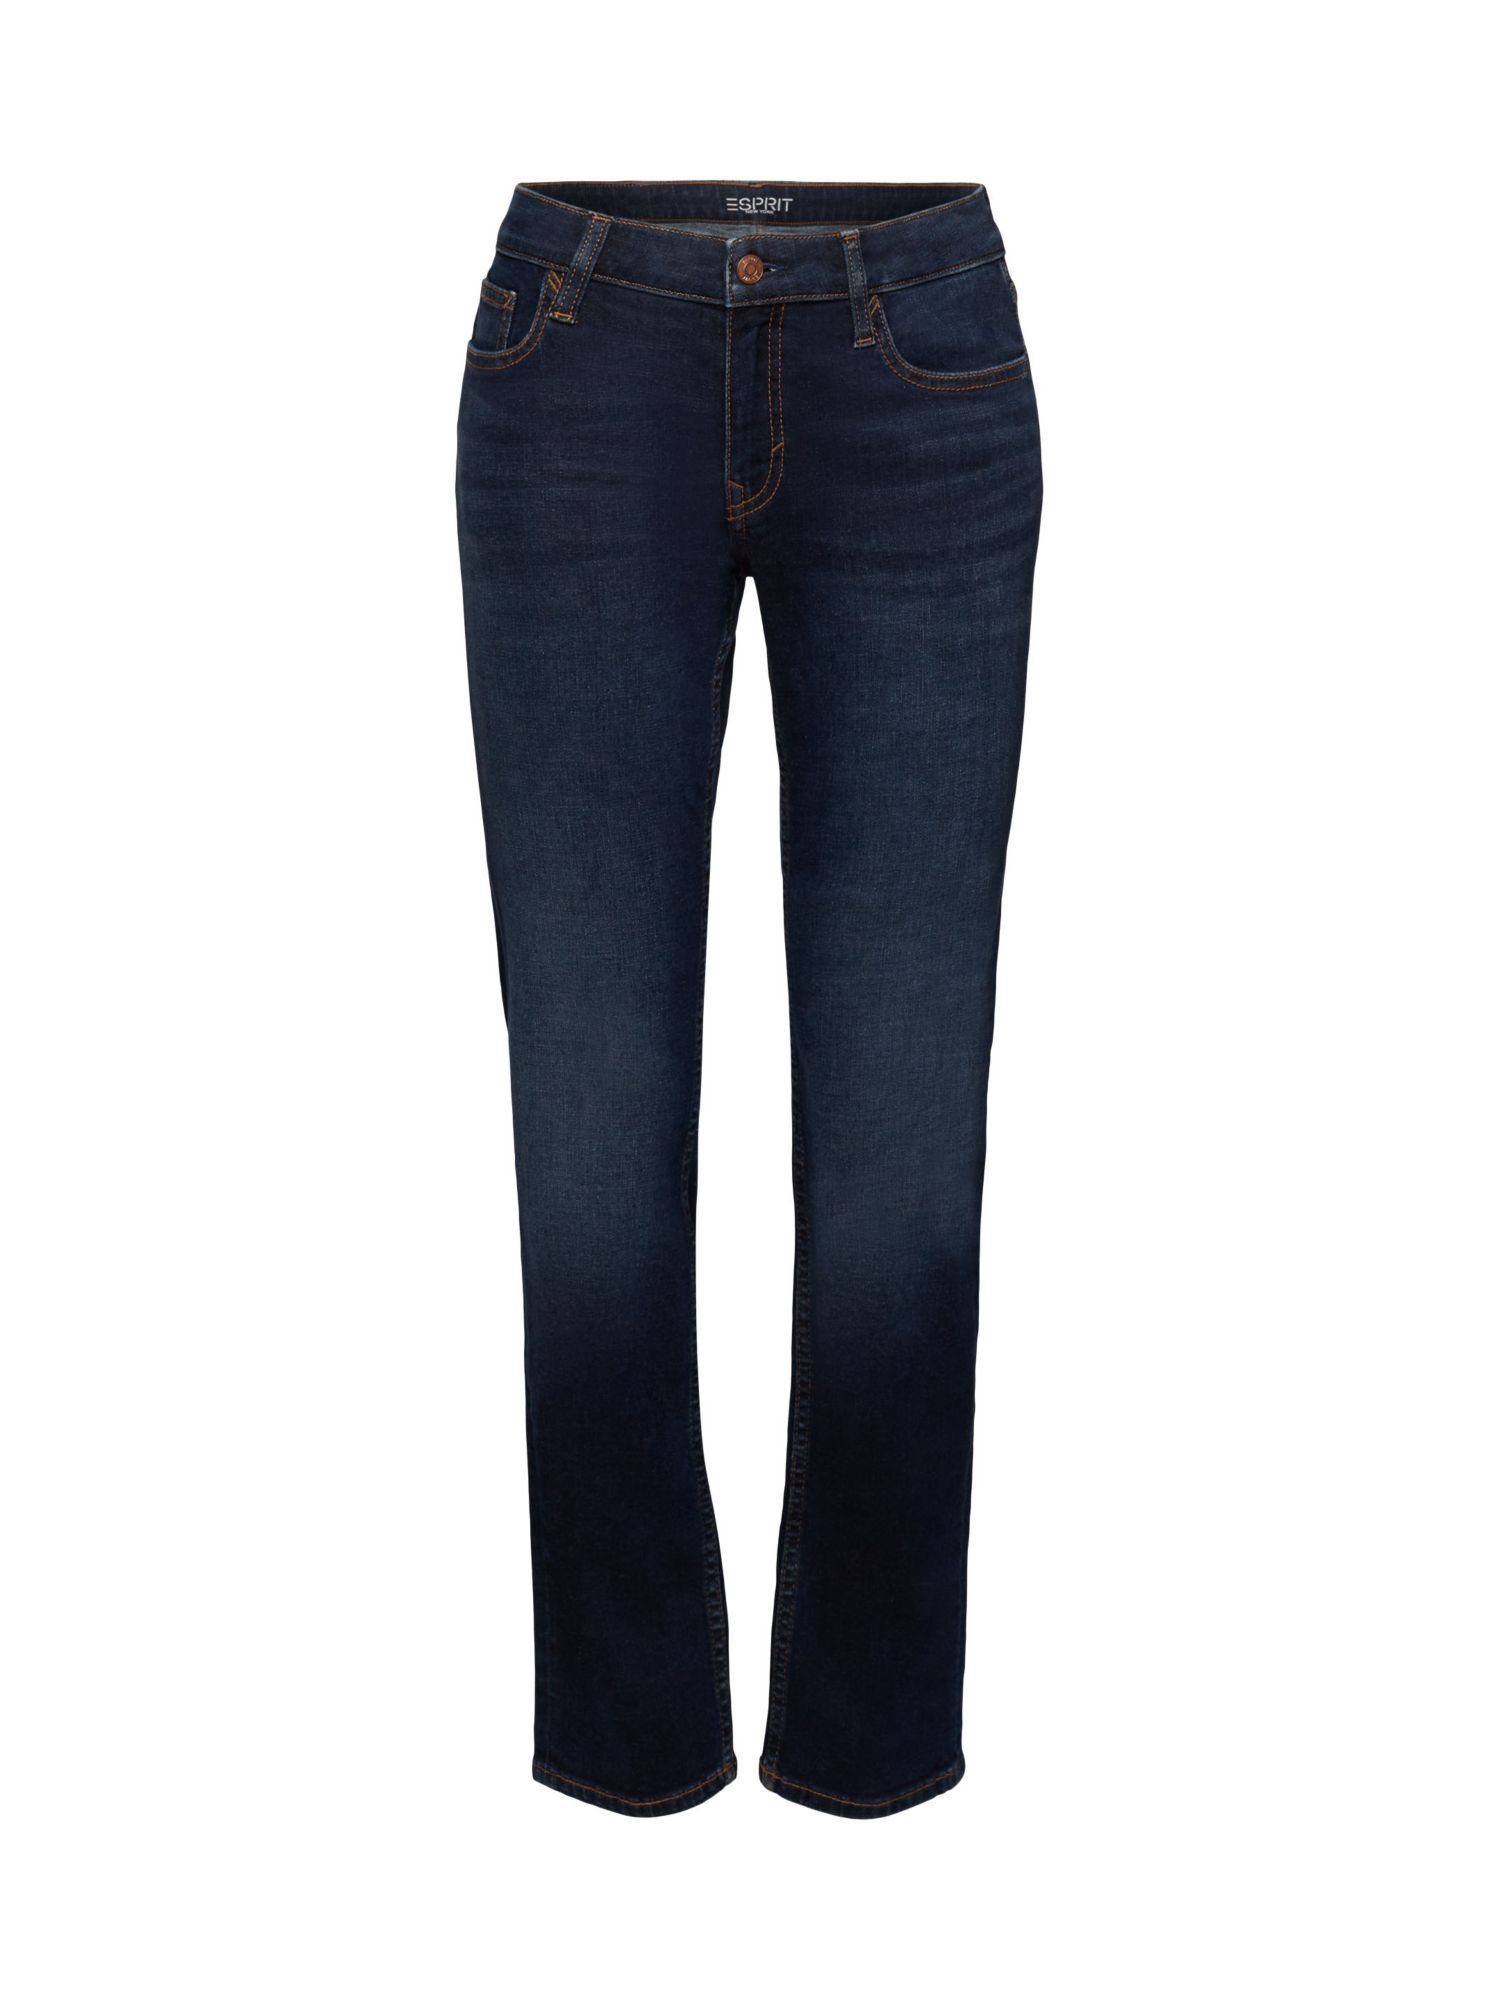 Esprit Straight-Jeans Gerade Jeans mit mittelhohem Bund | Straight-Fit Jeans